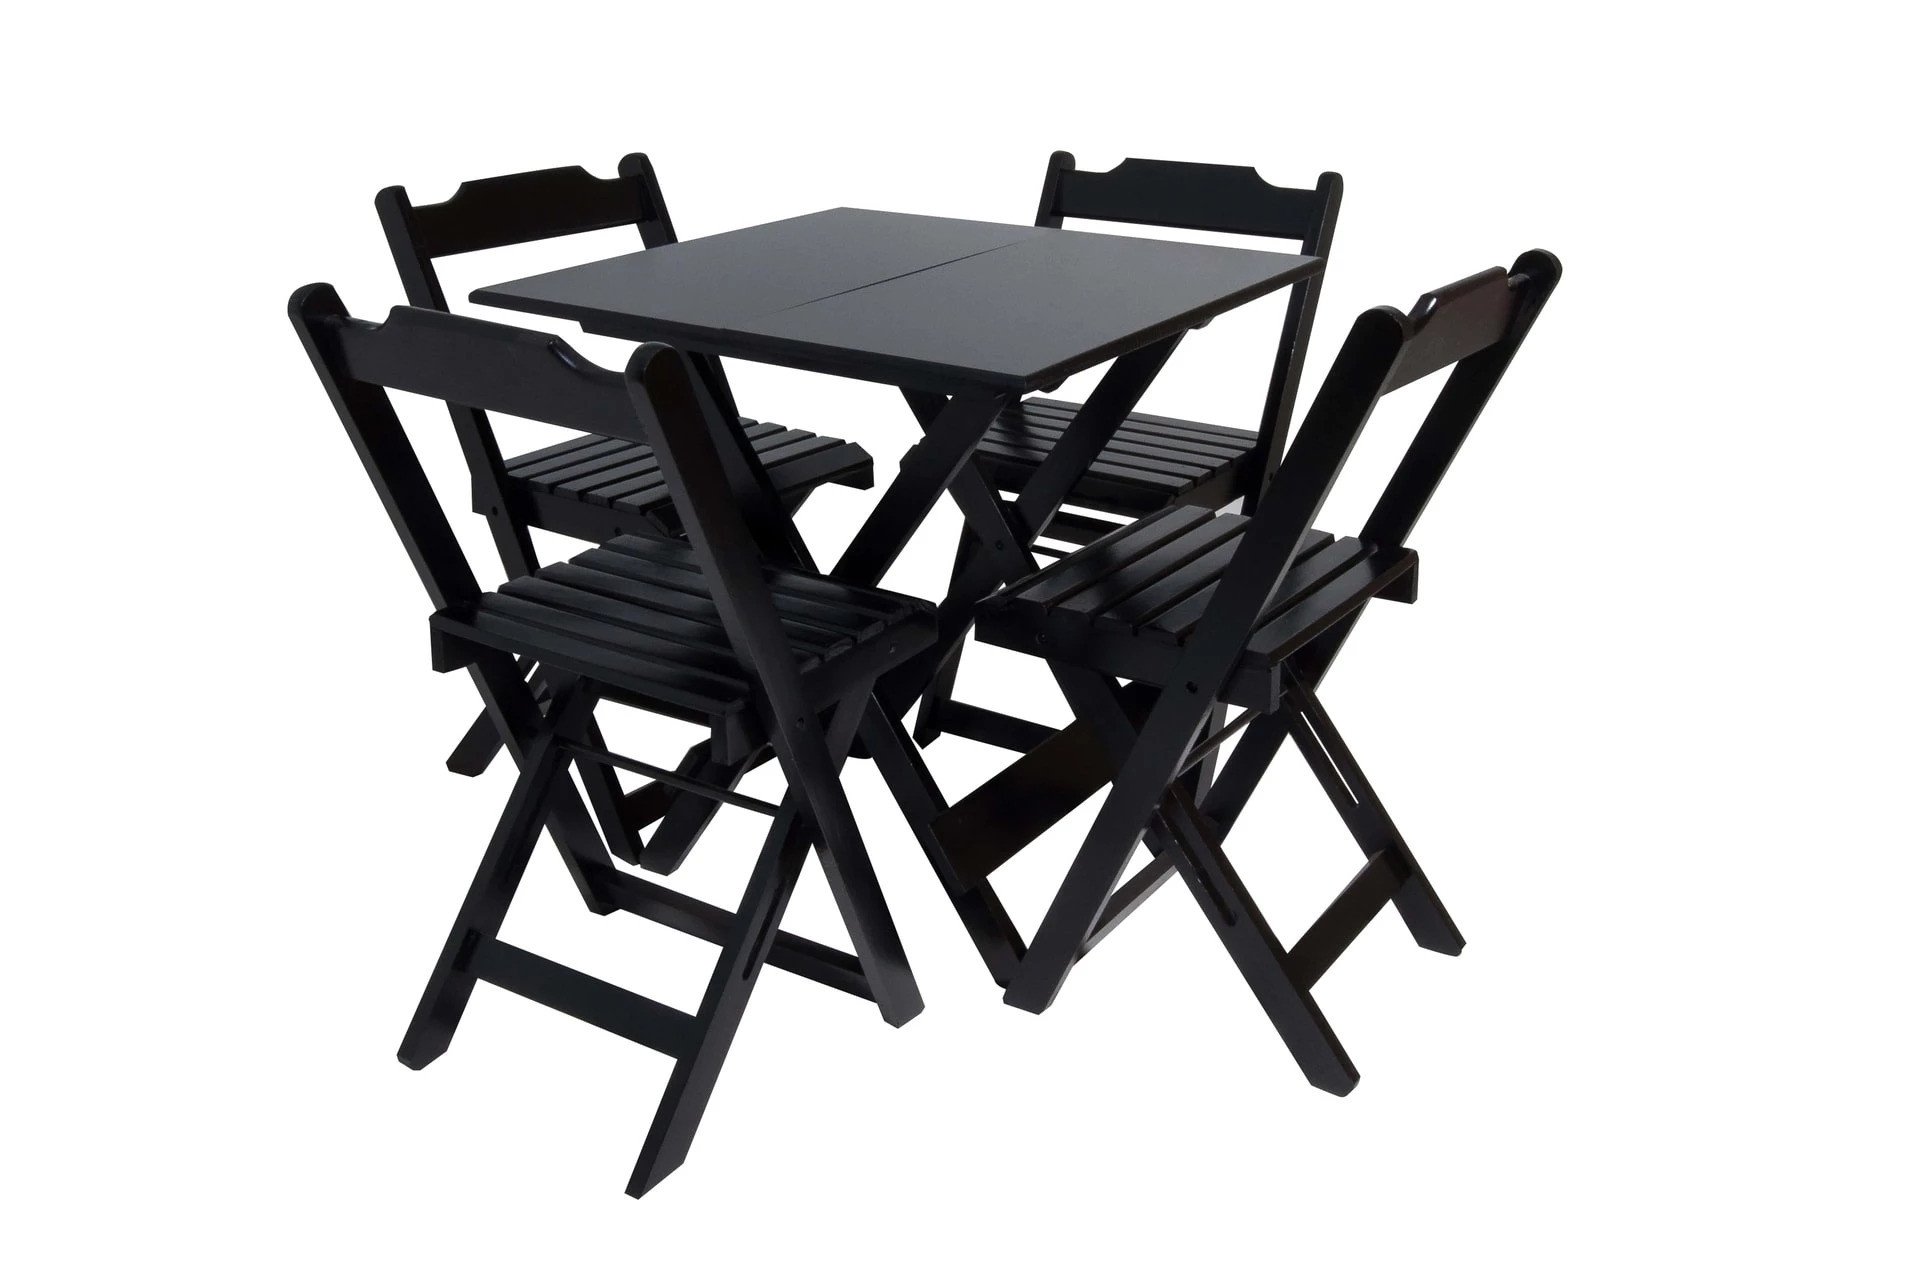 Kit com 10 Conjuntos de Jogo de Mesa 70x70 com 4 Cadeiras Dobráveis - Dg Móveis:preto